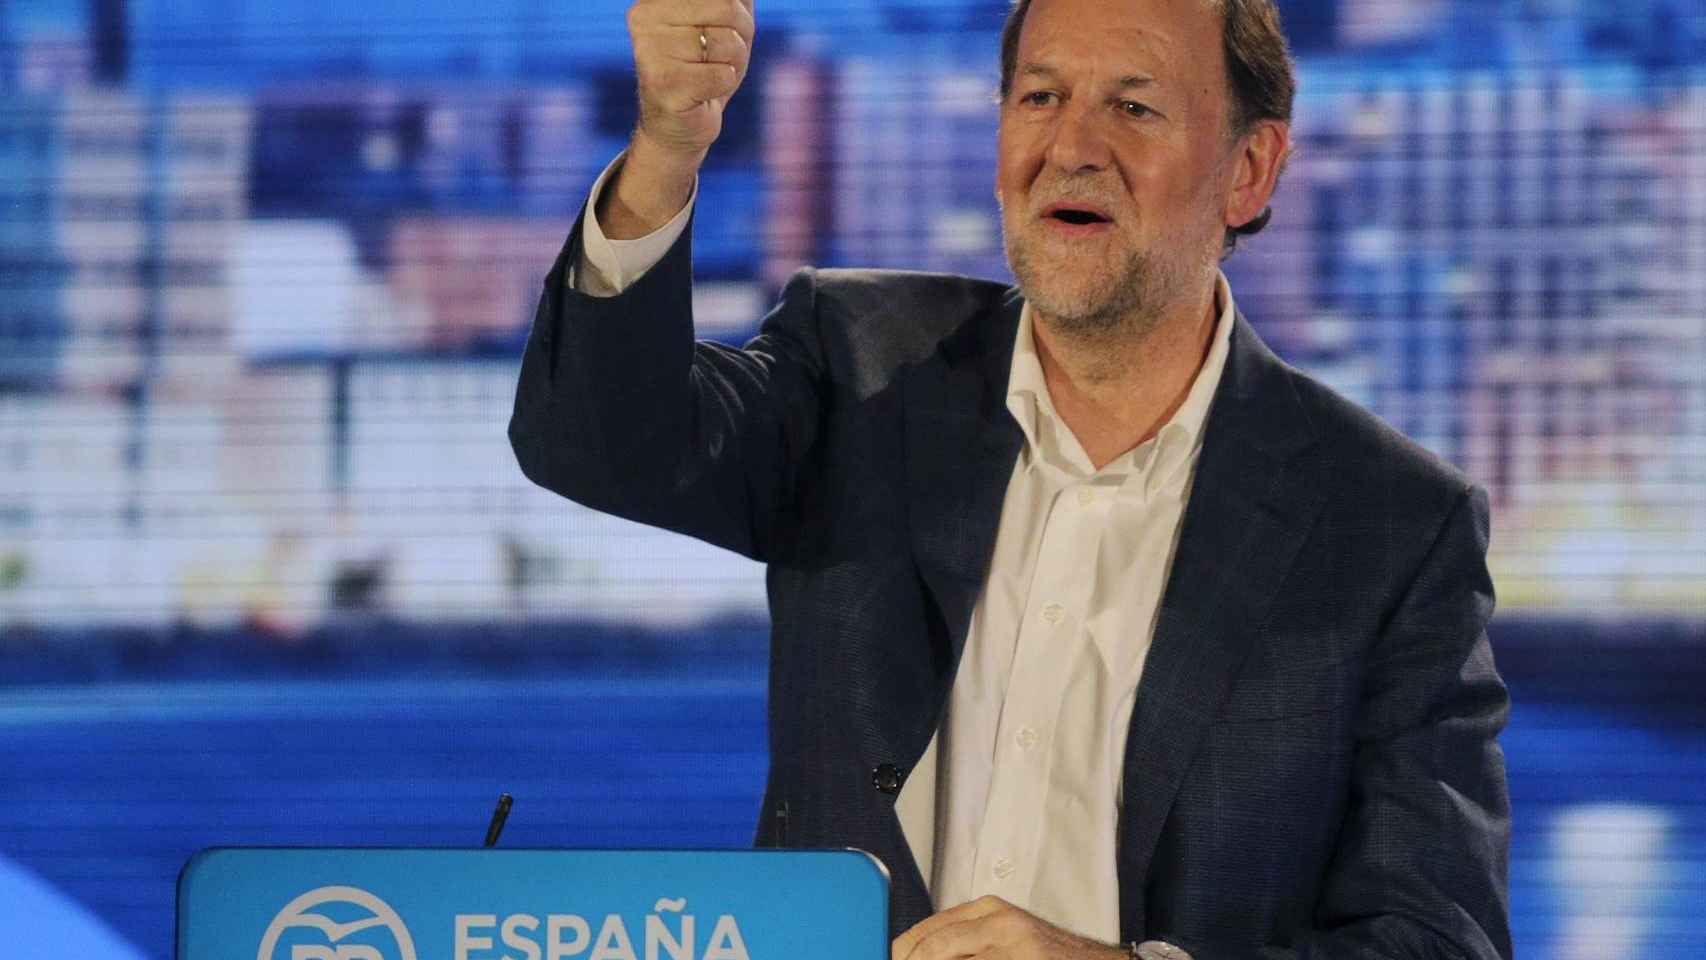 Mariano Rajoy saluda en el mitin en A Coruña después de la agresión.